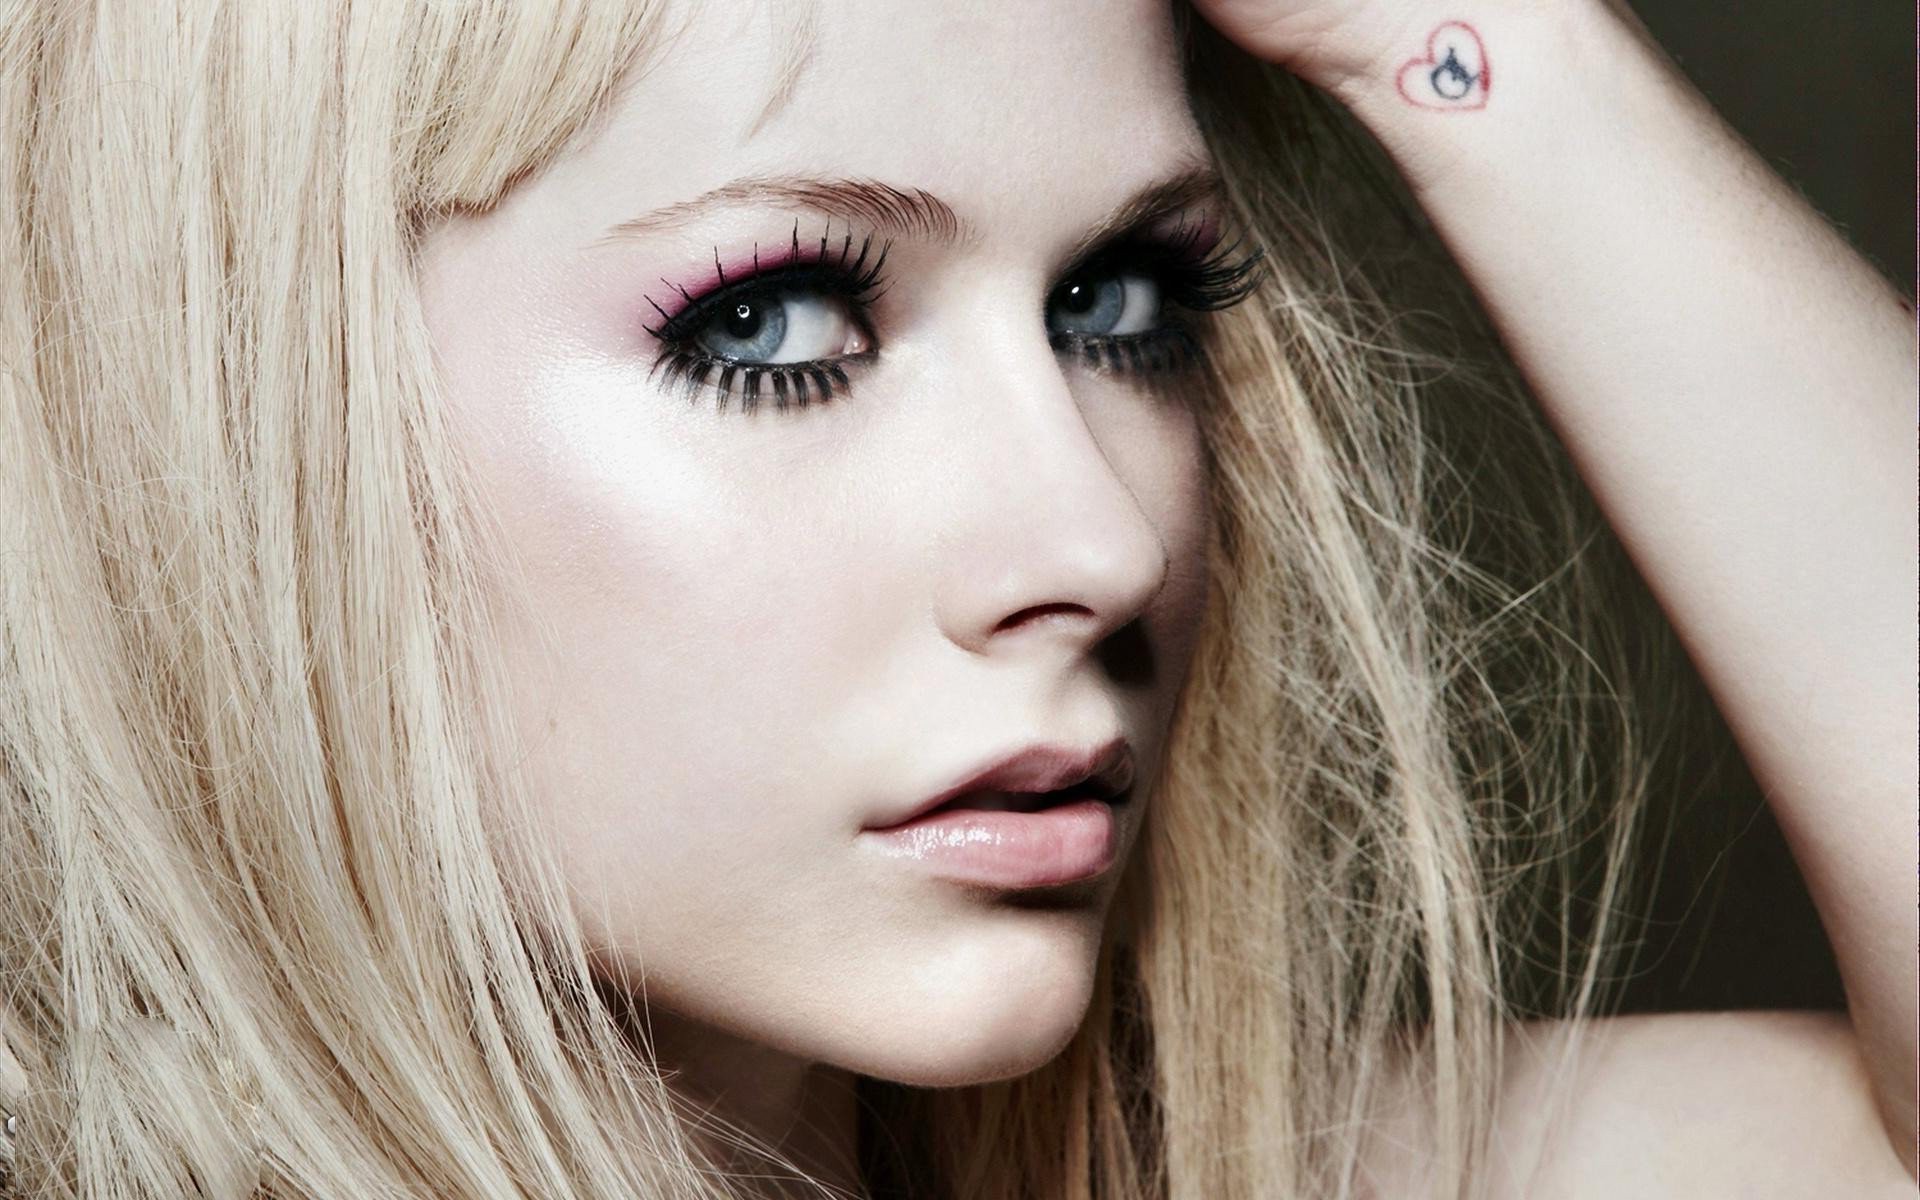 Wallpapers Avril Lavigne blonde singer on the desktop